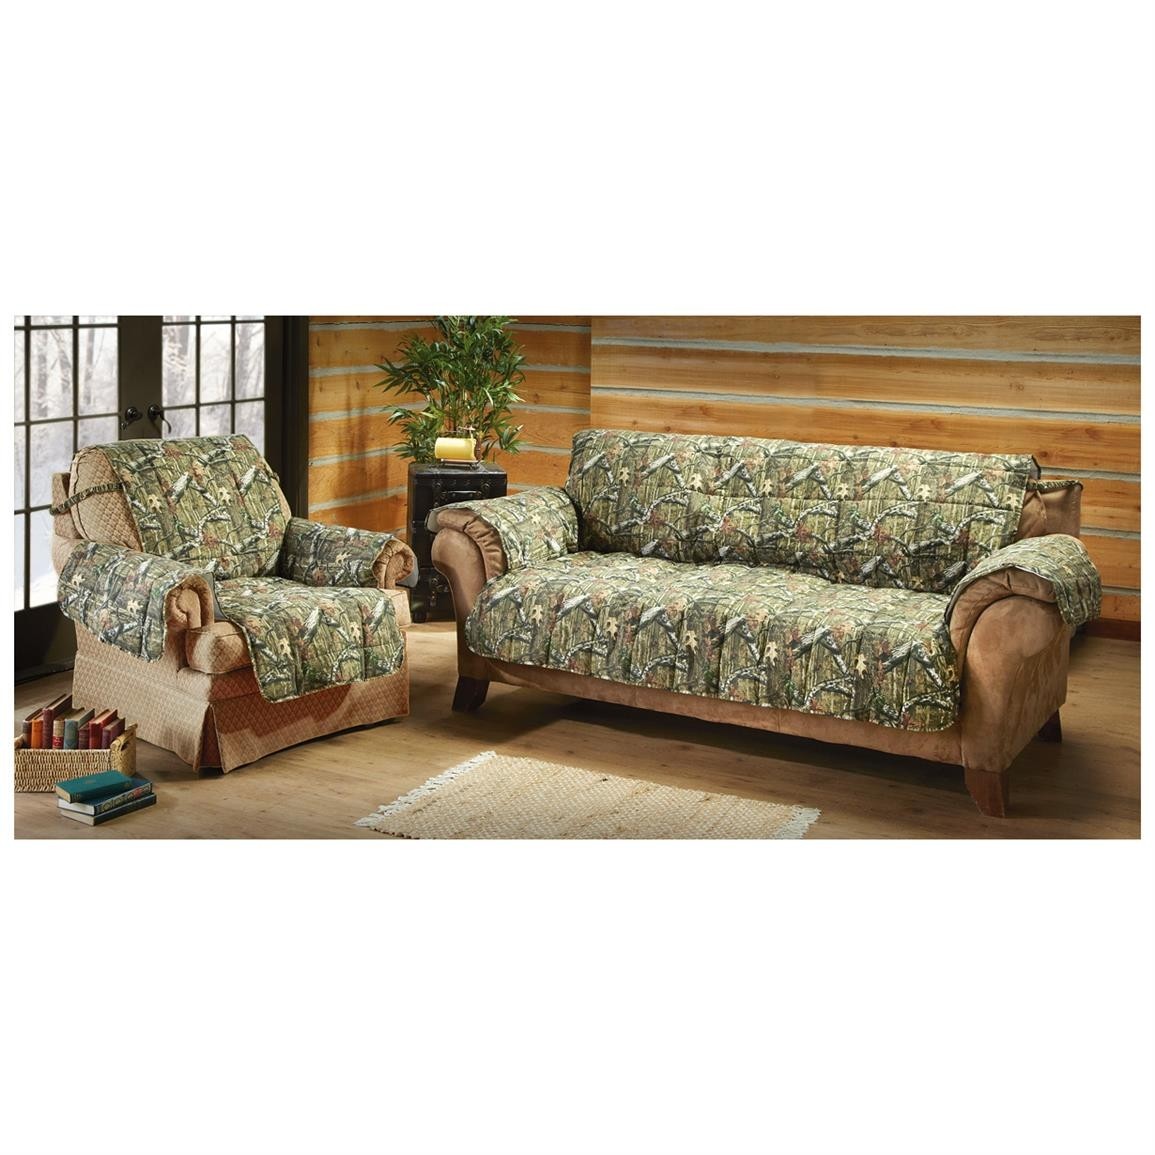 Mossy oak camo furniture covers 647980 furniture covers 1